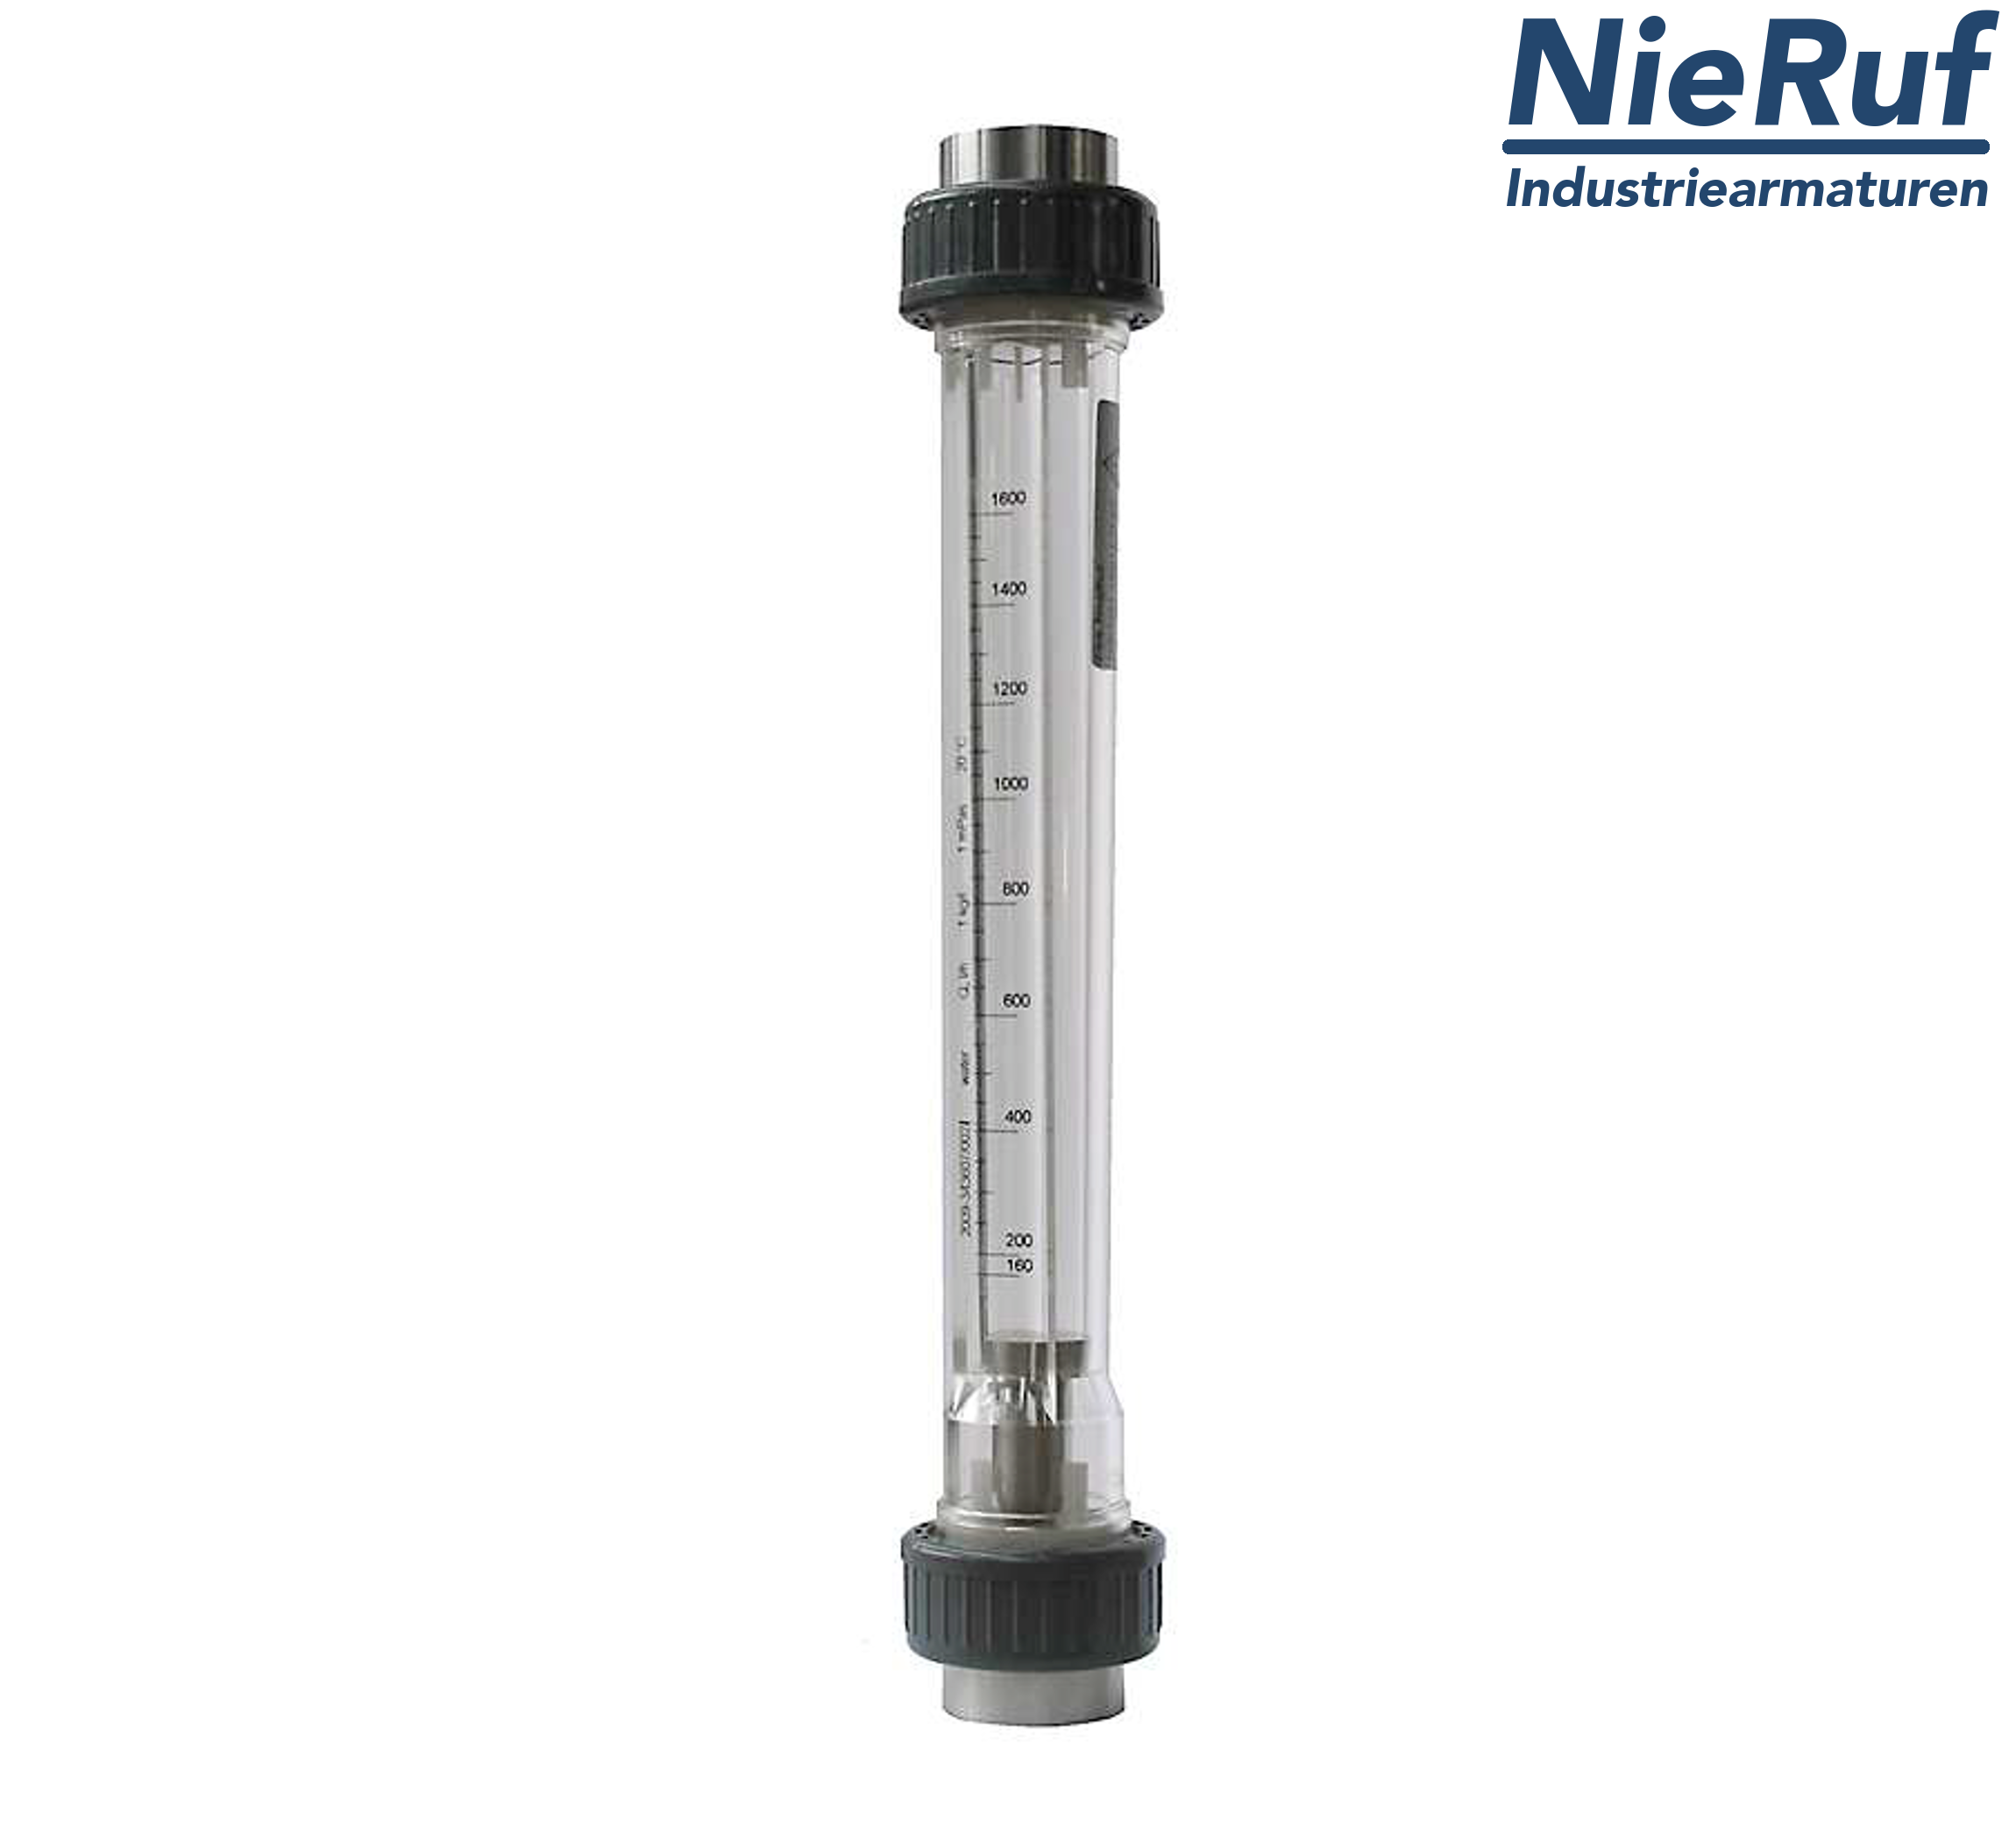 Variable area flowmeter 2" Inch NPT 143000.0 - 430000 l/h air NBR